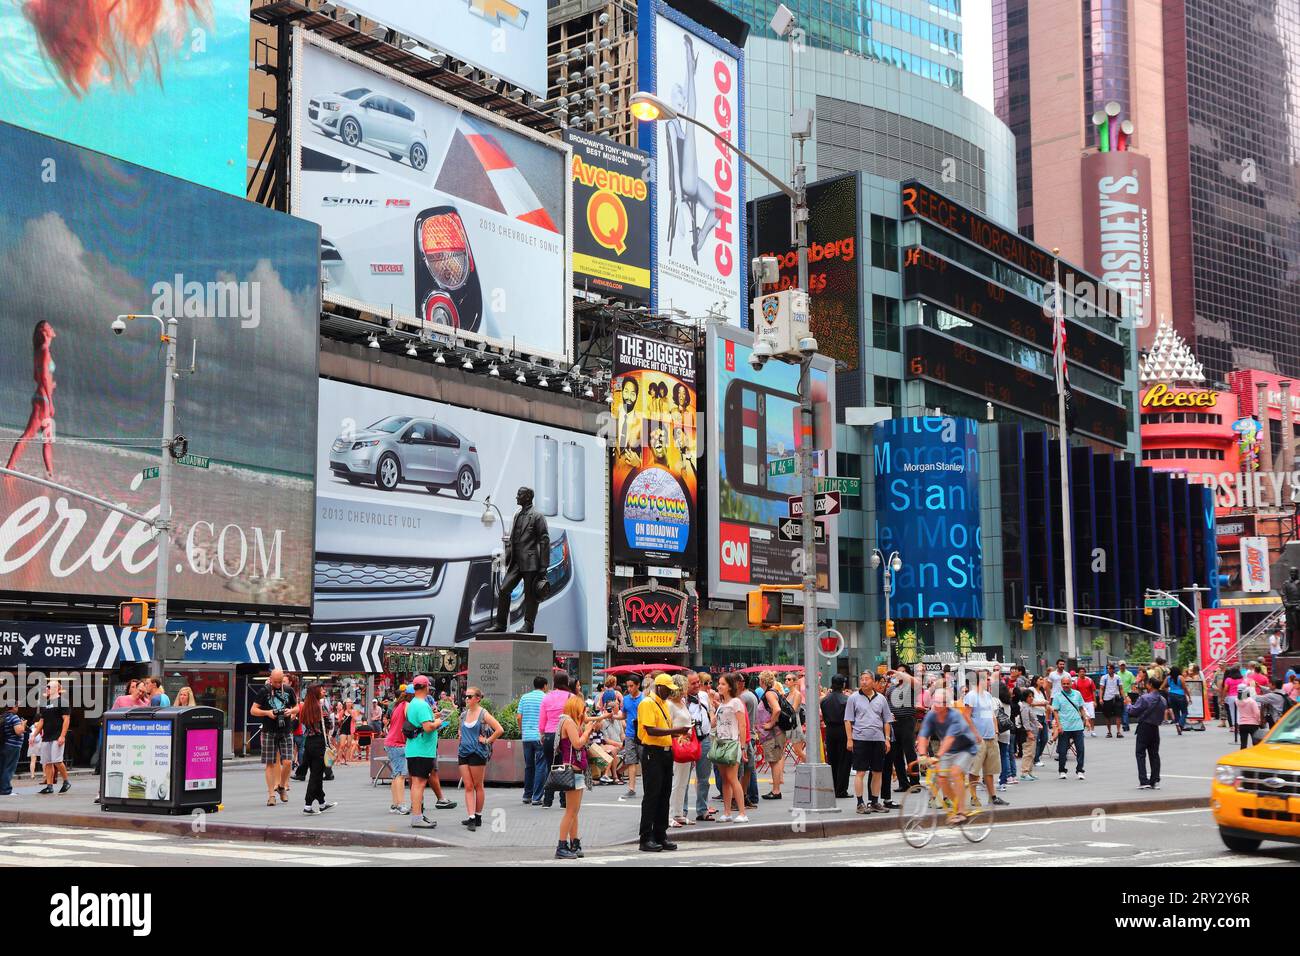 NEW YORK, USA - 4. JULI 2013: Besucher besuchen den Times Square in New York. Der Platz an der Kreuzung von Broadway und 7th Avenue ist ein berühmtes Wahrzeichen von New York. Stockfoto